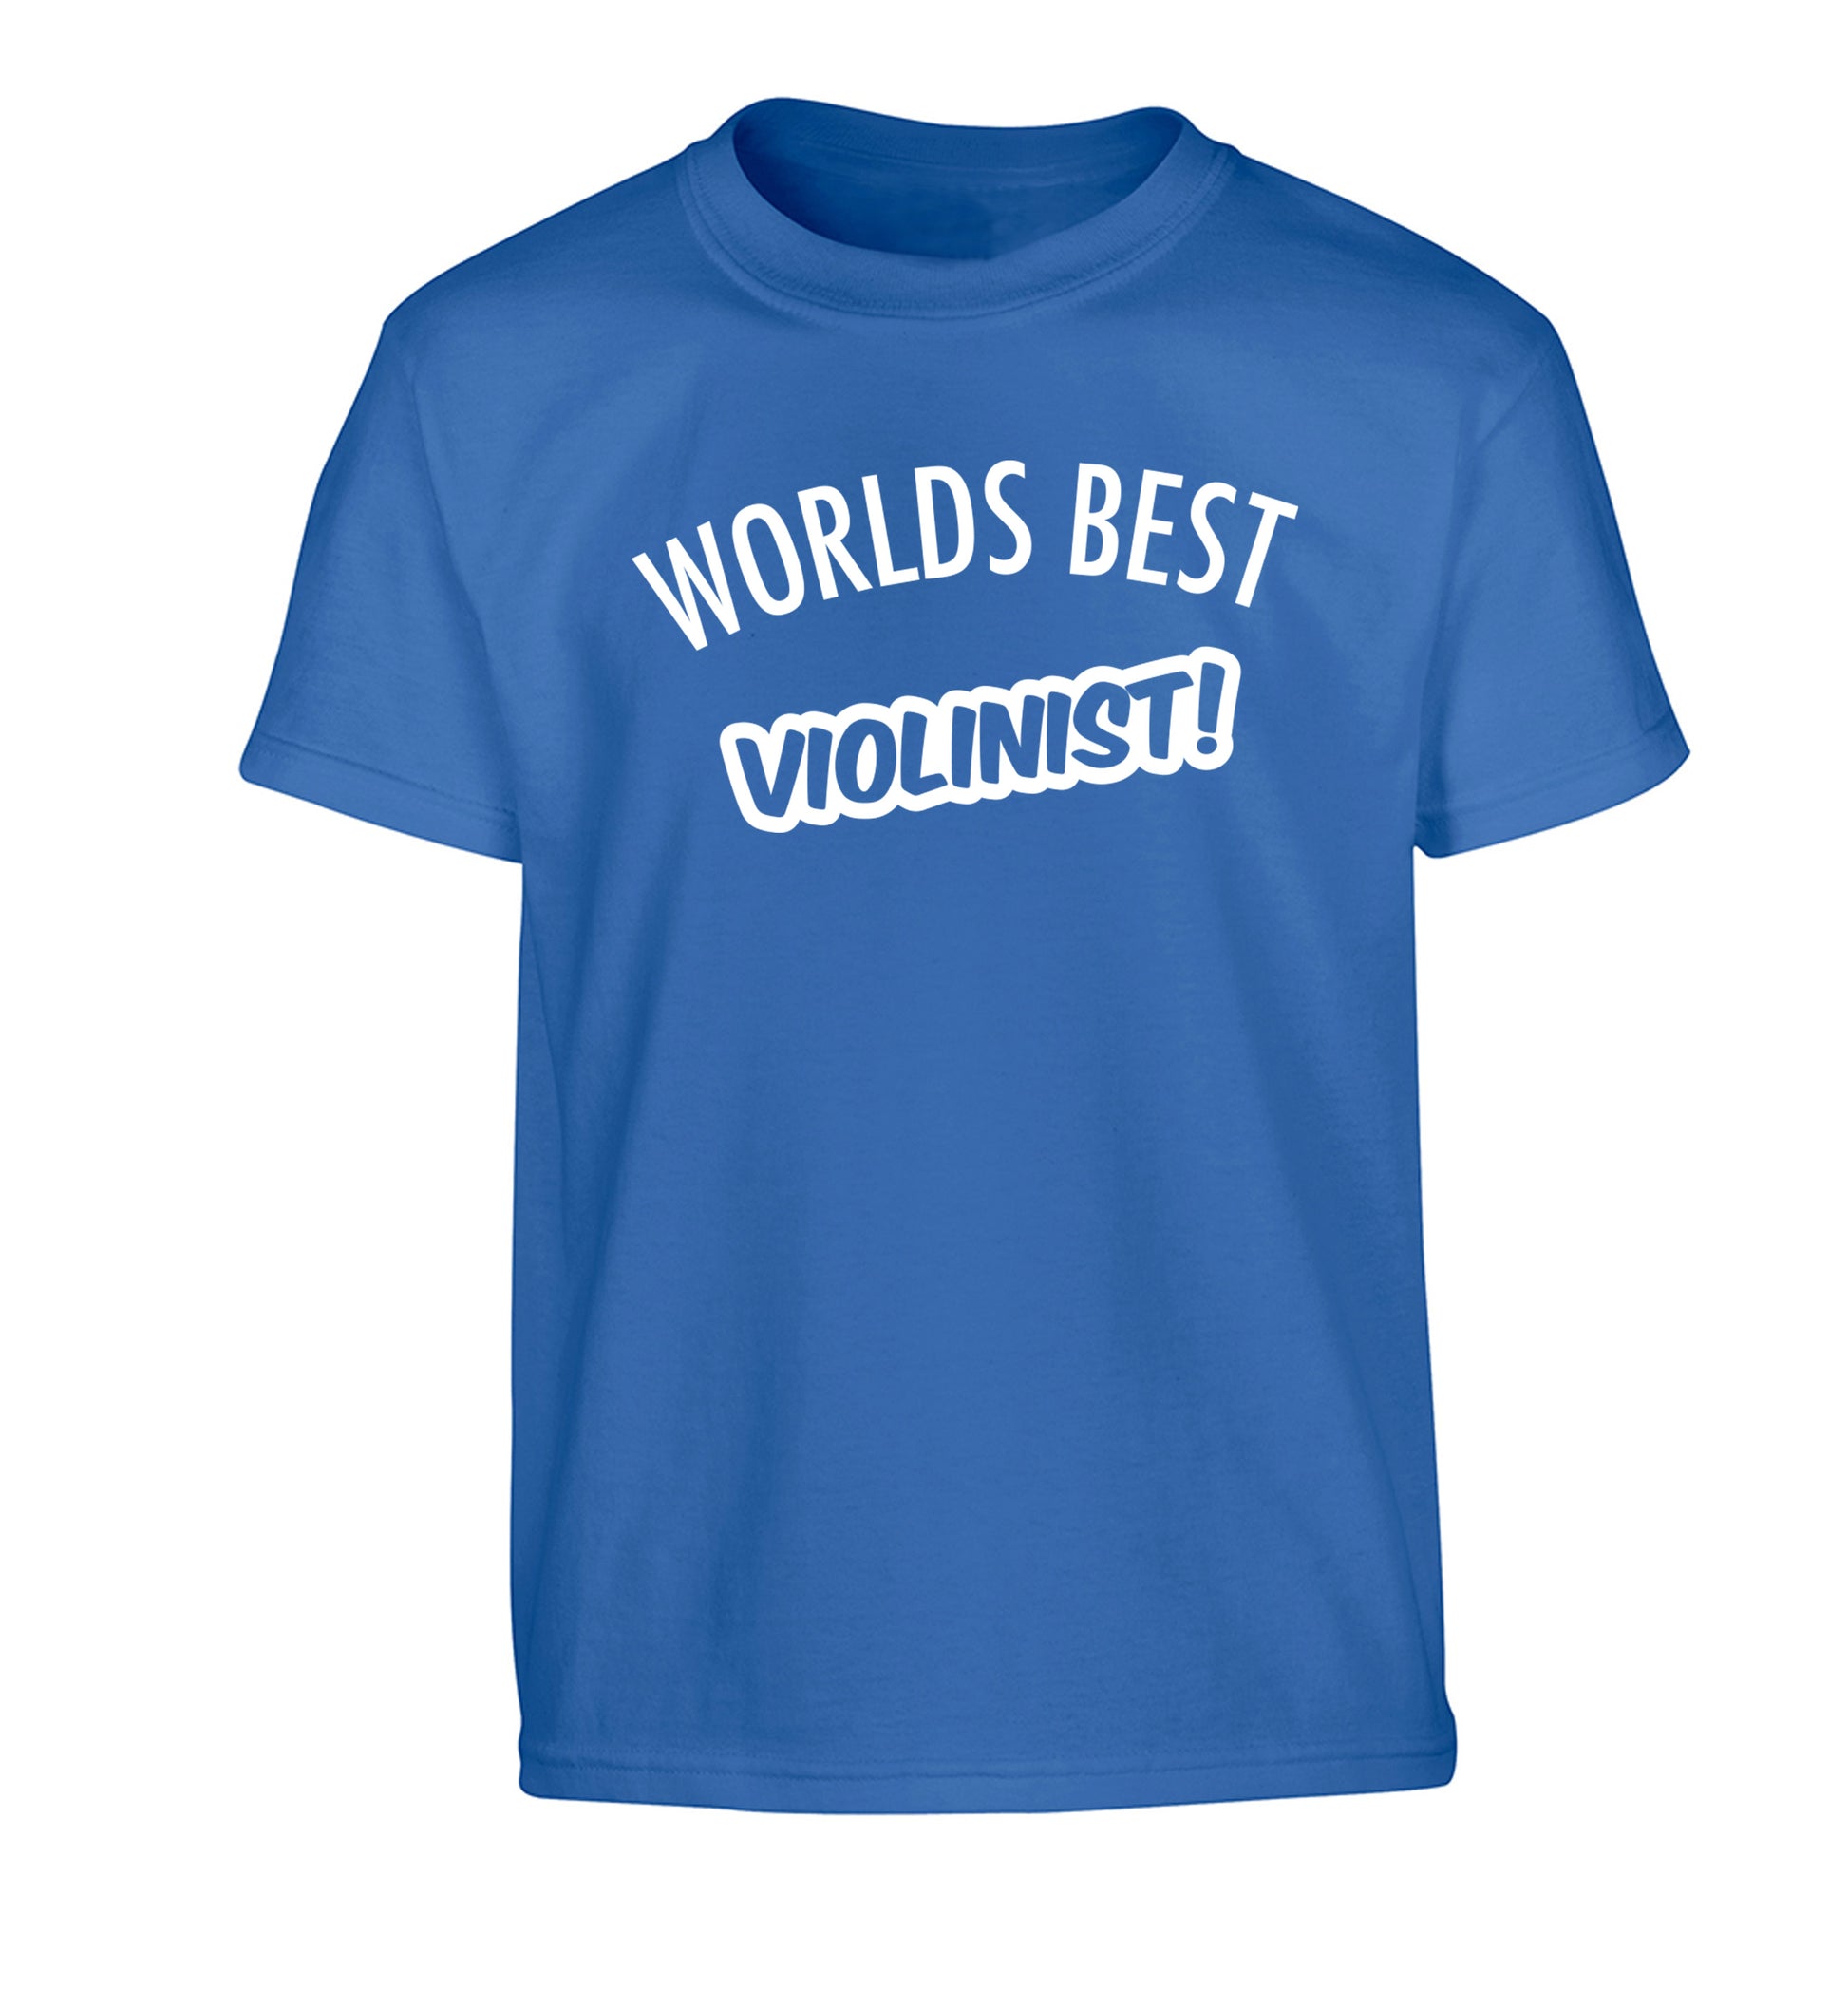 Worlds best violinist Children's blue Tshirt 12-13 Years